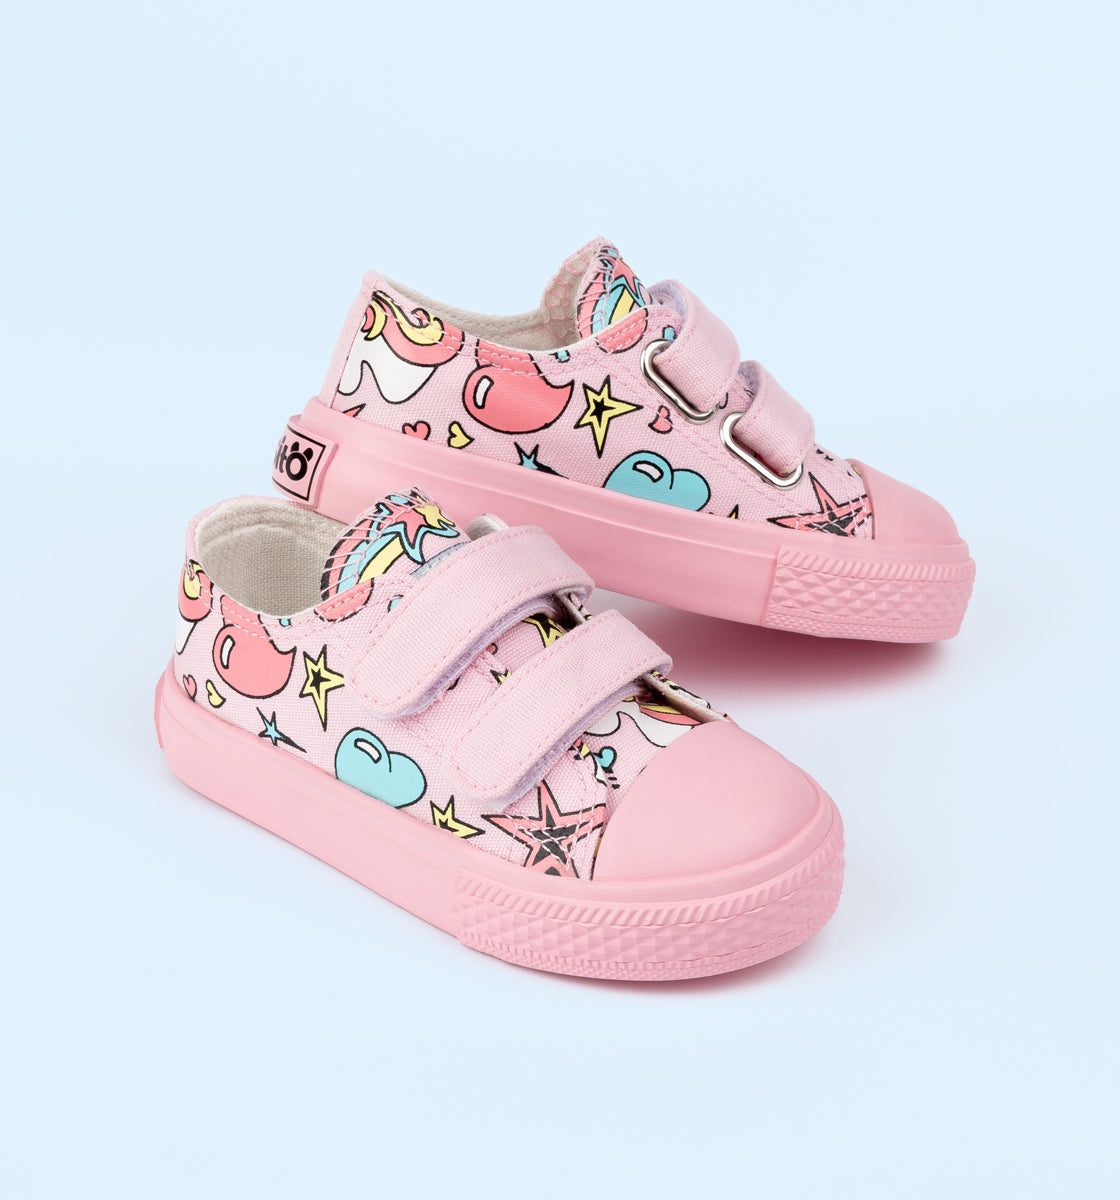 Mañana Miau miau Resolver Zapatos para Bebé | Tienda de Calzado Bebé - Conguitos